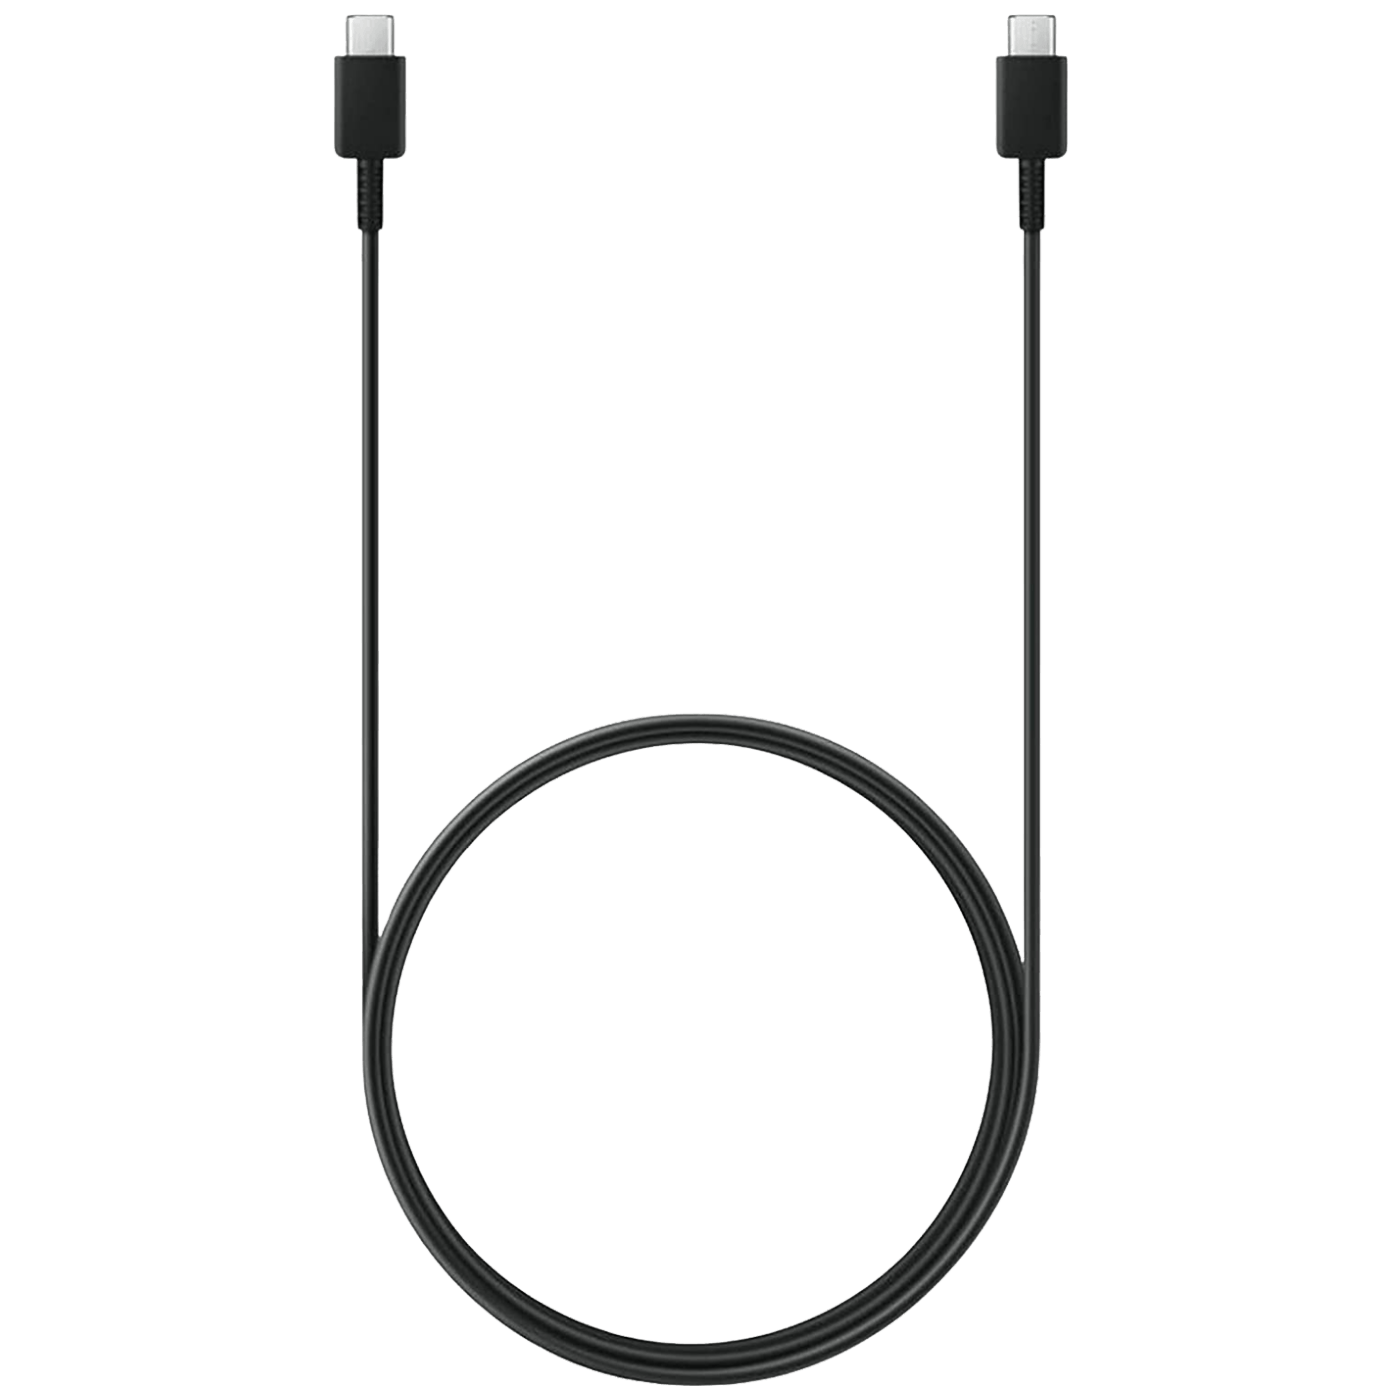 Kabl za mobitel USB type C, 1.8 met., 3A, crna